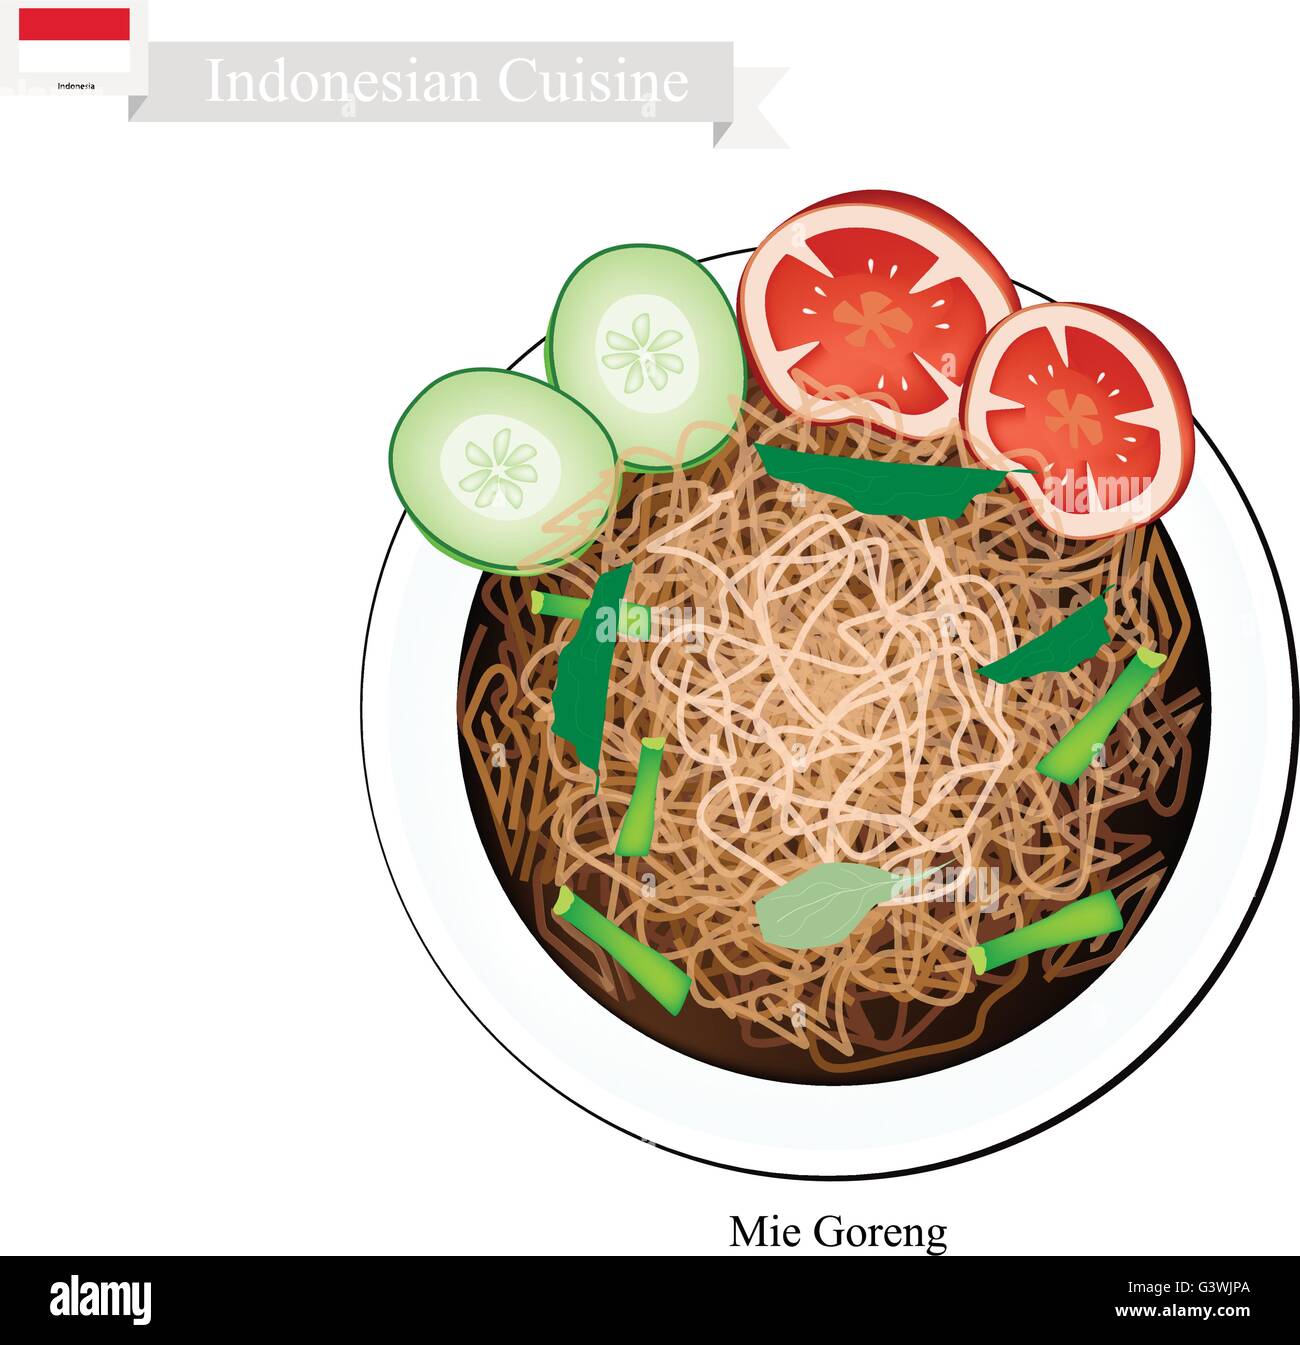 La cuisine indonésienne, Mie Goreng ou nouilles frites traditionnelles. L'un des plats les plus populaires en Indonésie. Illustration de Vecteur